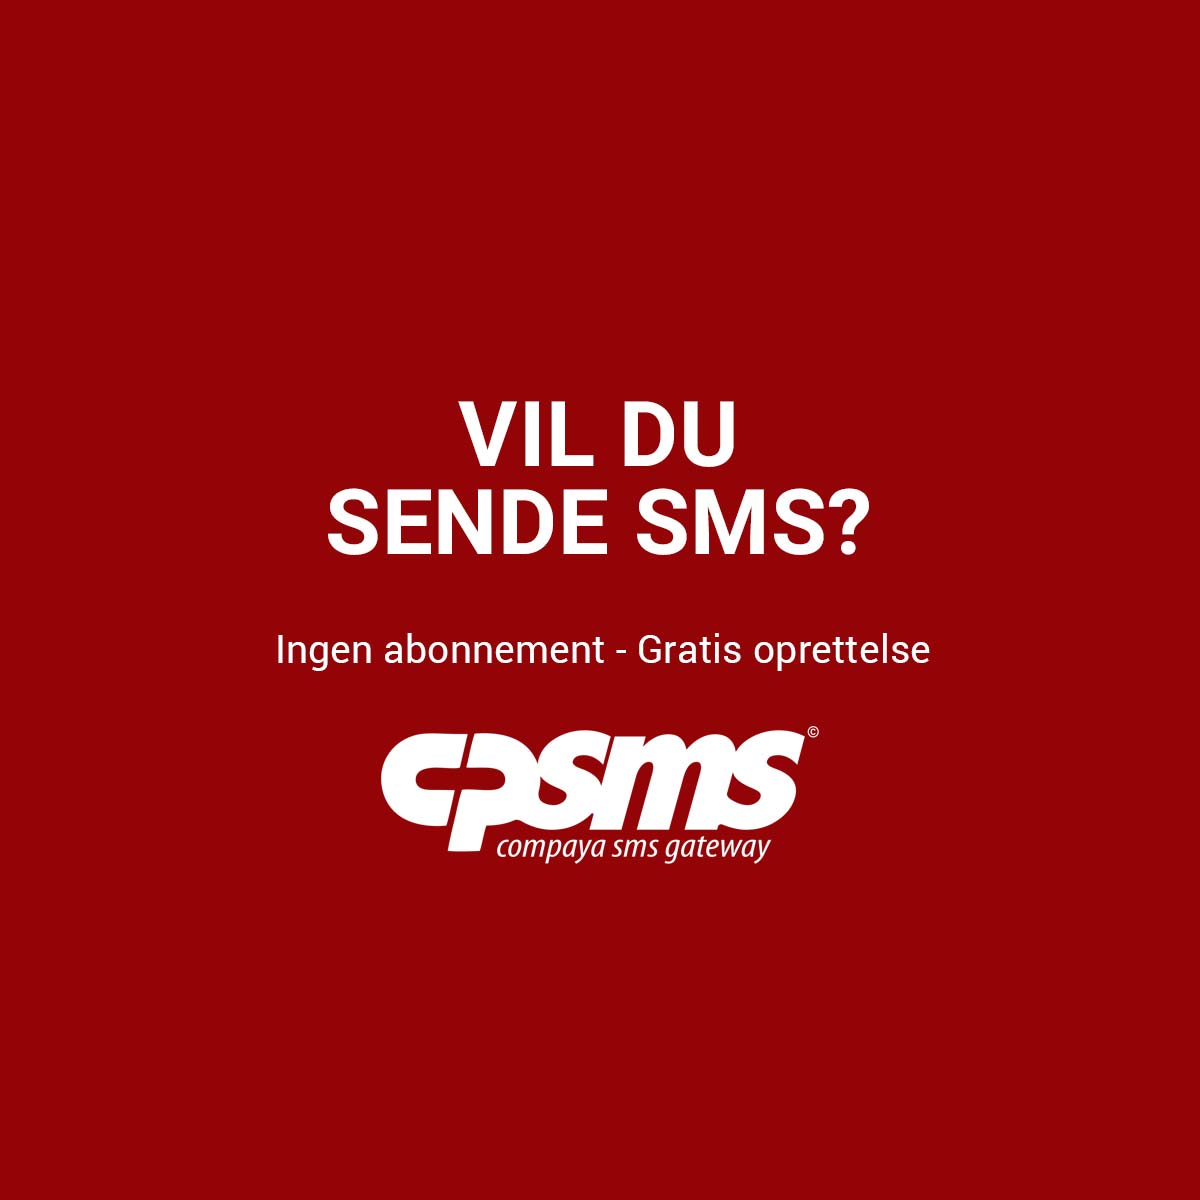 SMS - SMS online med CPSMS.DK SMS